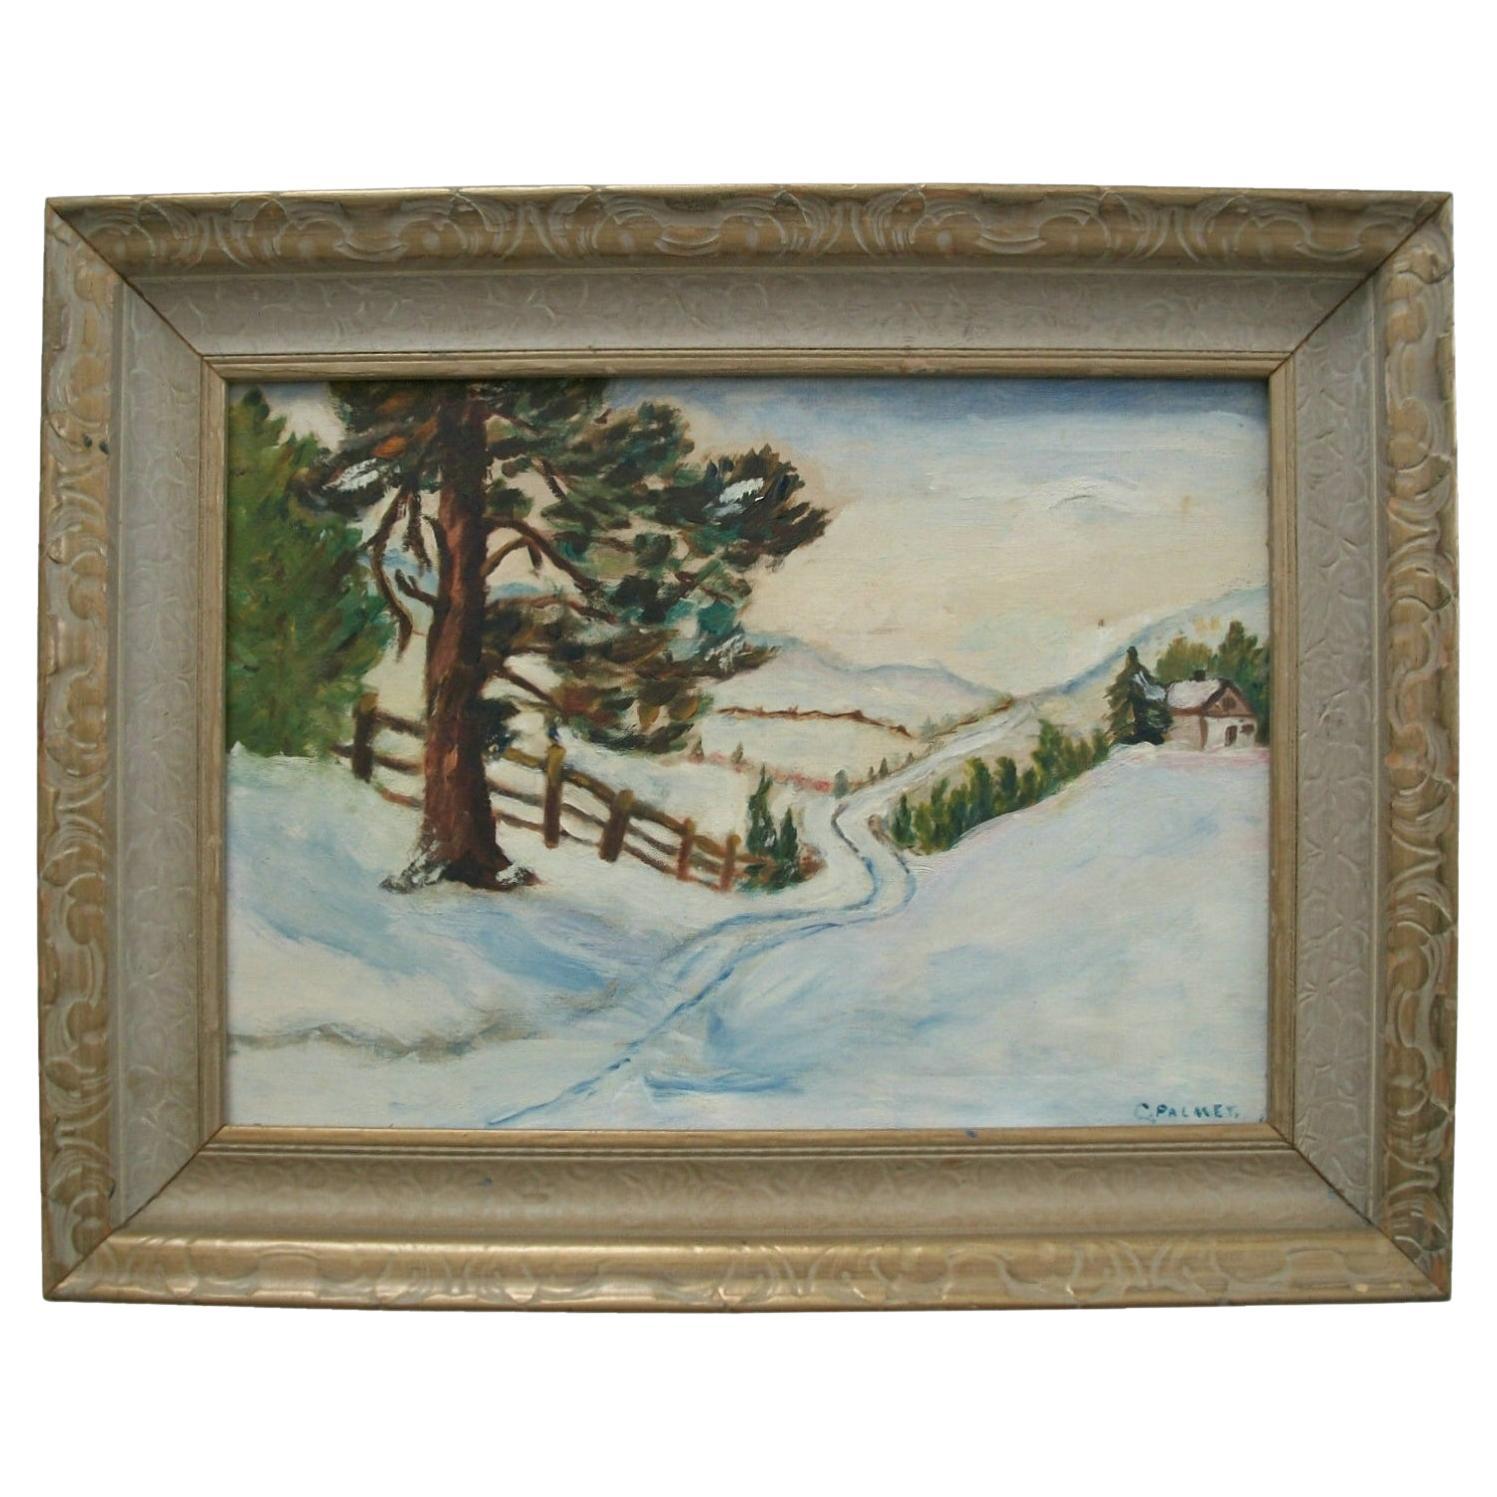 C PALMER – Impressionistisches Winterlandschaftsgemälde im Stil des Impressionismus – Kanada – frühes 20. Jahrhunderts